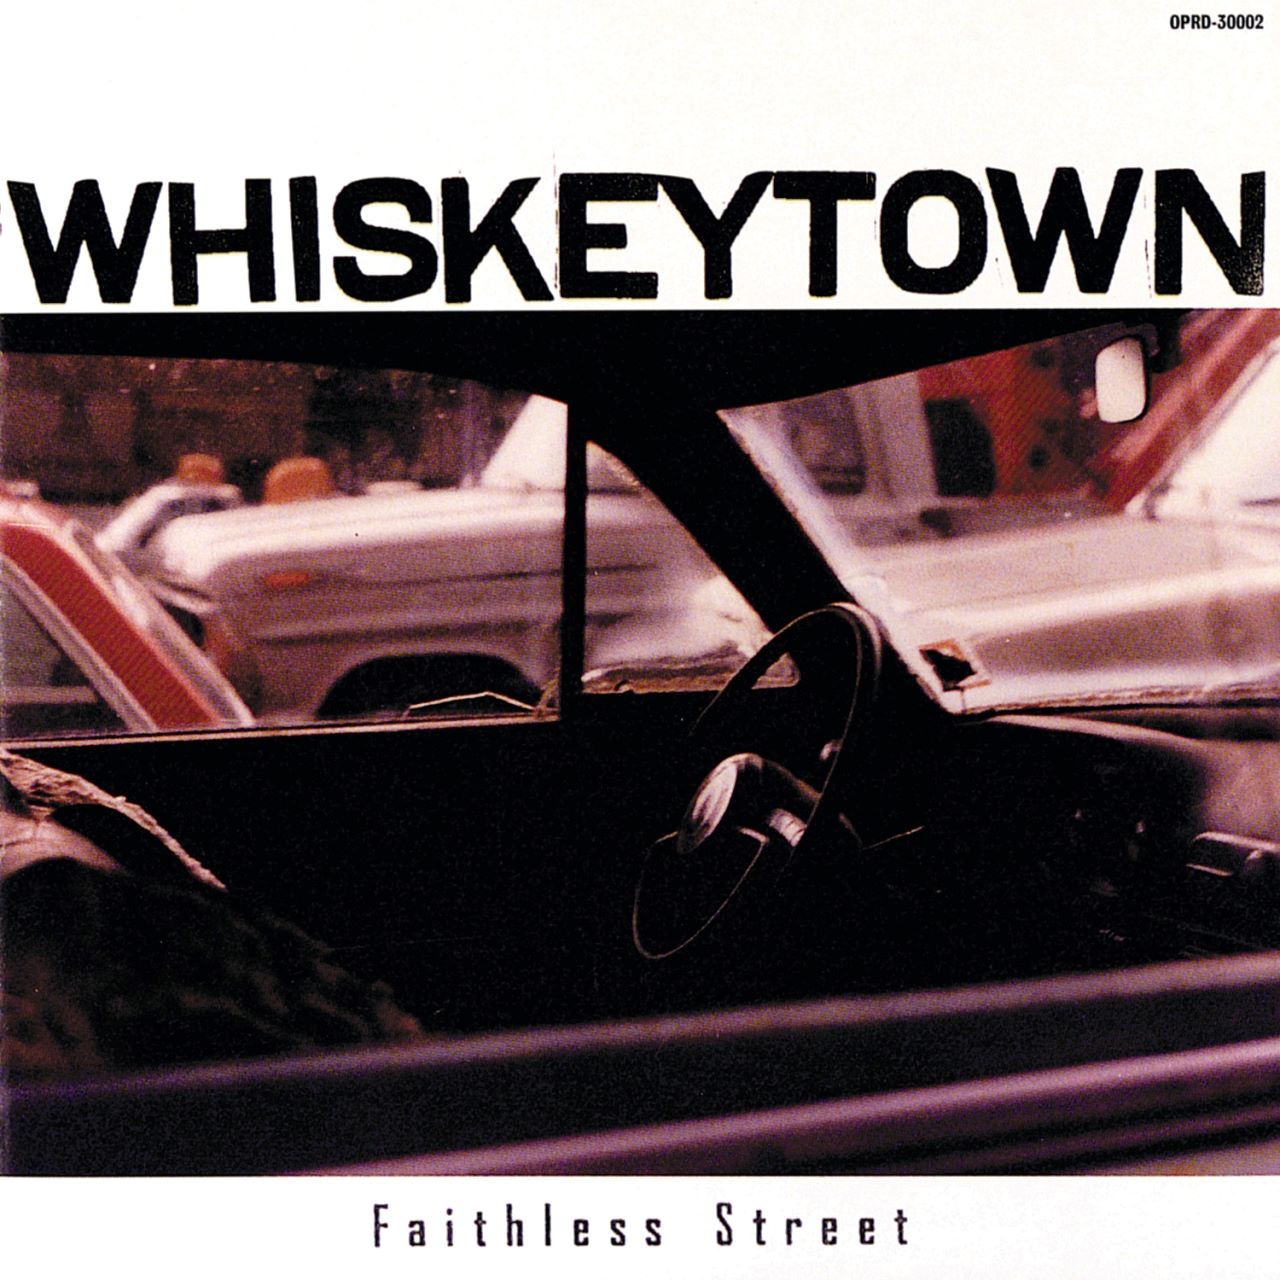 Whiskeytown - Faithless Street cover album